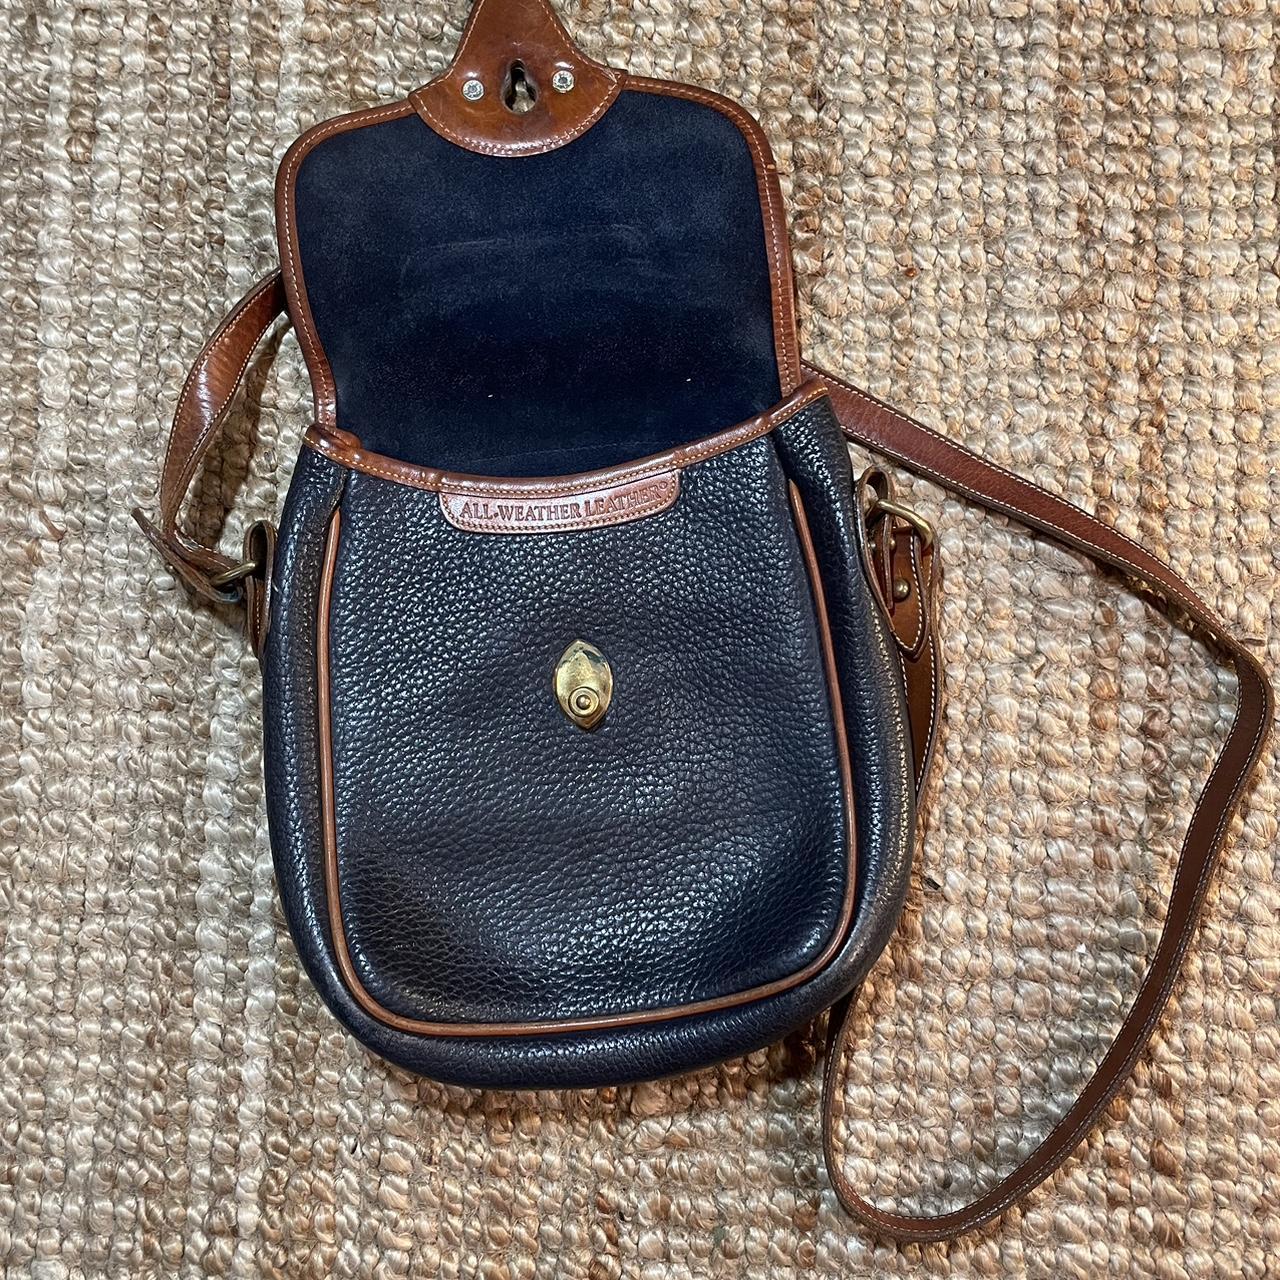 Vintage Dooney & Bourke Crossbody Bag vintage gem. - Depop